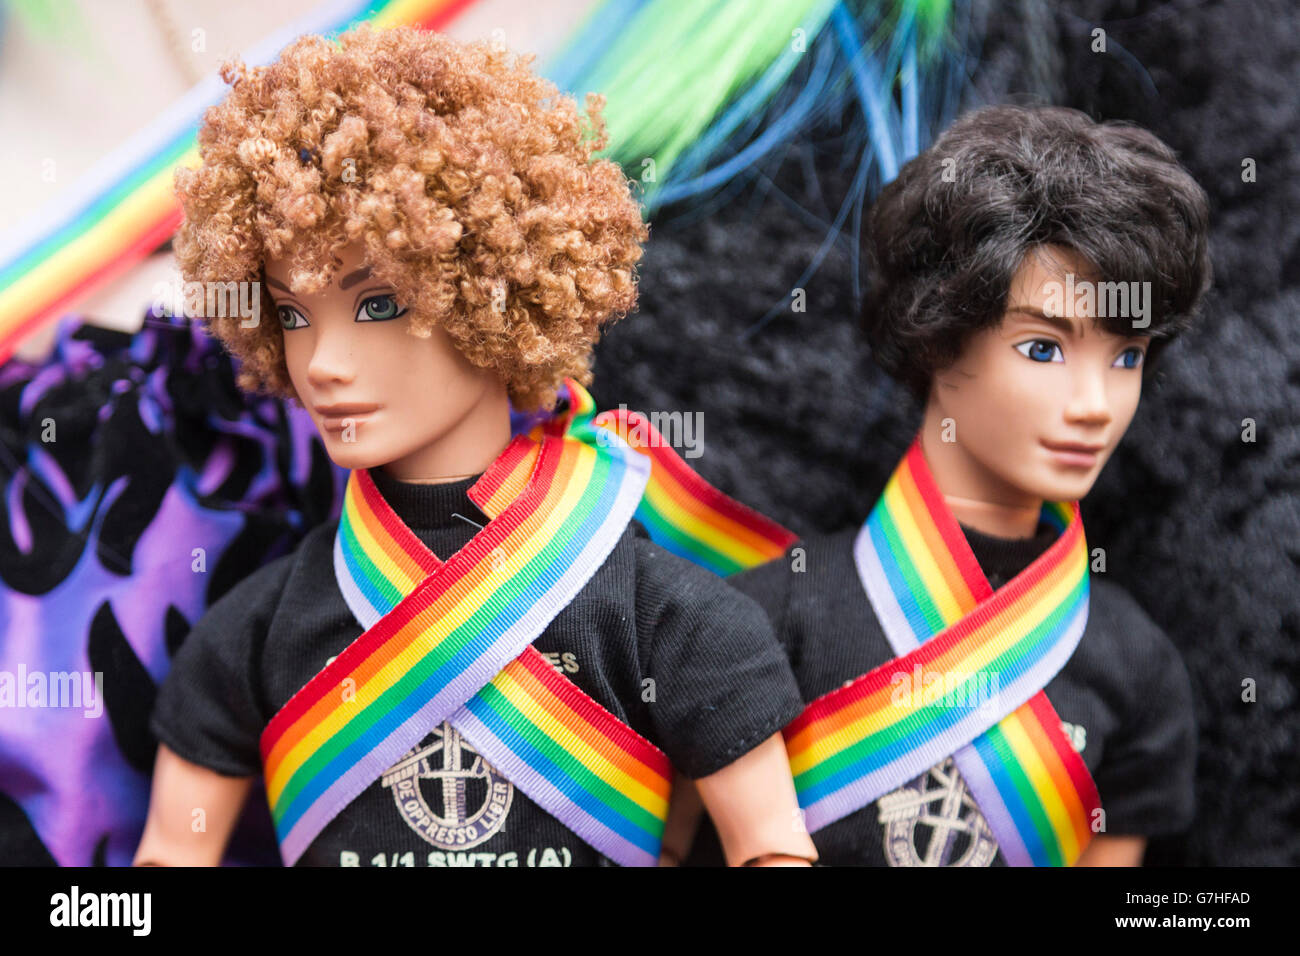 London, UK. 25. Juni 2016. Zwei männliche Barbie-Puppen. Tausende von  Serienfahrzeugen säumten die Strecke der 2016 London LGBT Pride Parade  Stockfotografie - Alamy